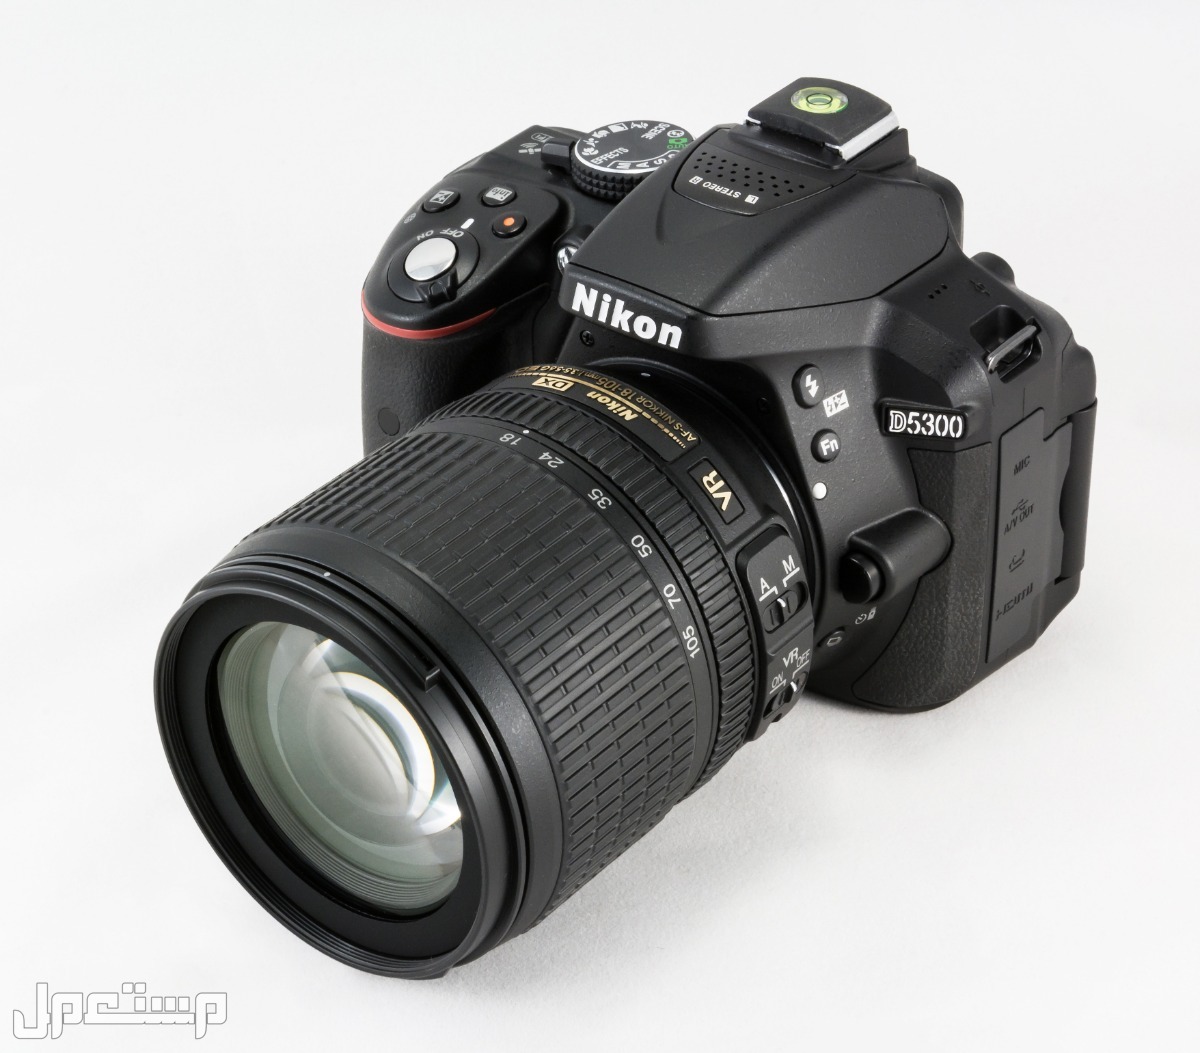 مواصفات ومميزات وأسعار أفضل أنواع كاميرات نيكون للمحترفين في اليَمَن كاميرا Nikon D5300